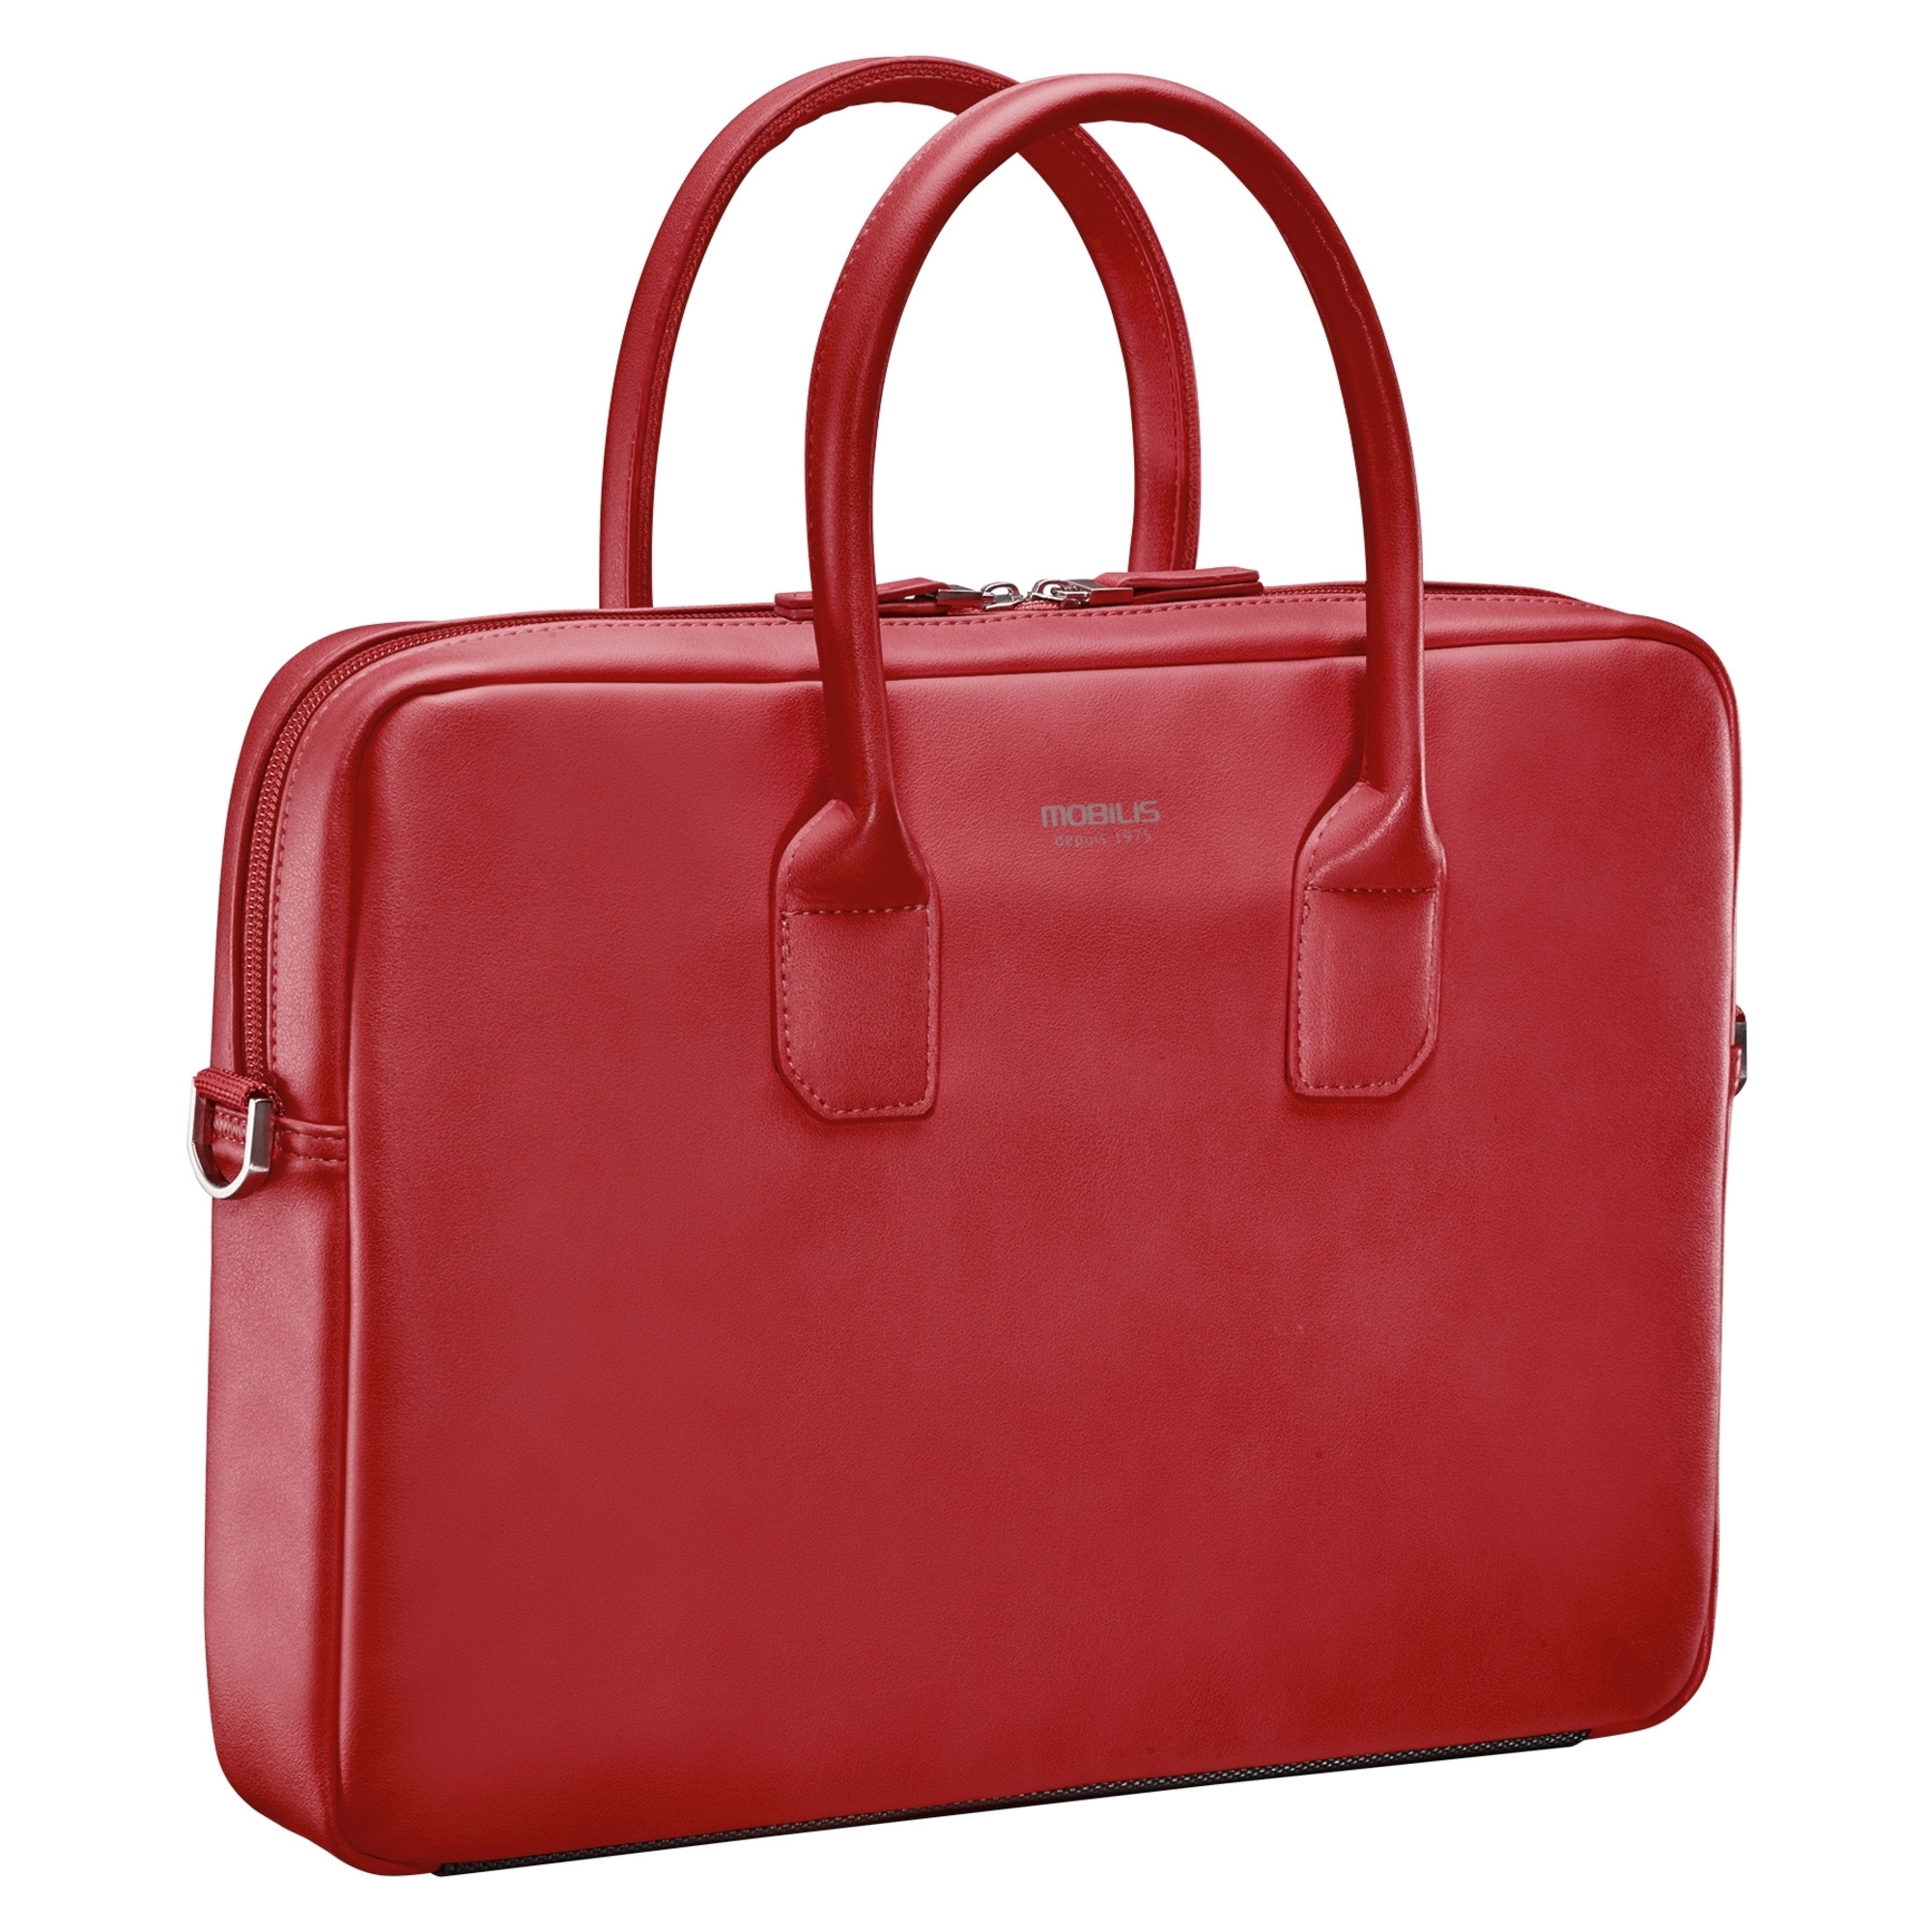 mobilis sacoche pour ordinateur portable - 11-14 - rouge - neuf